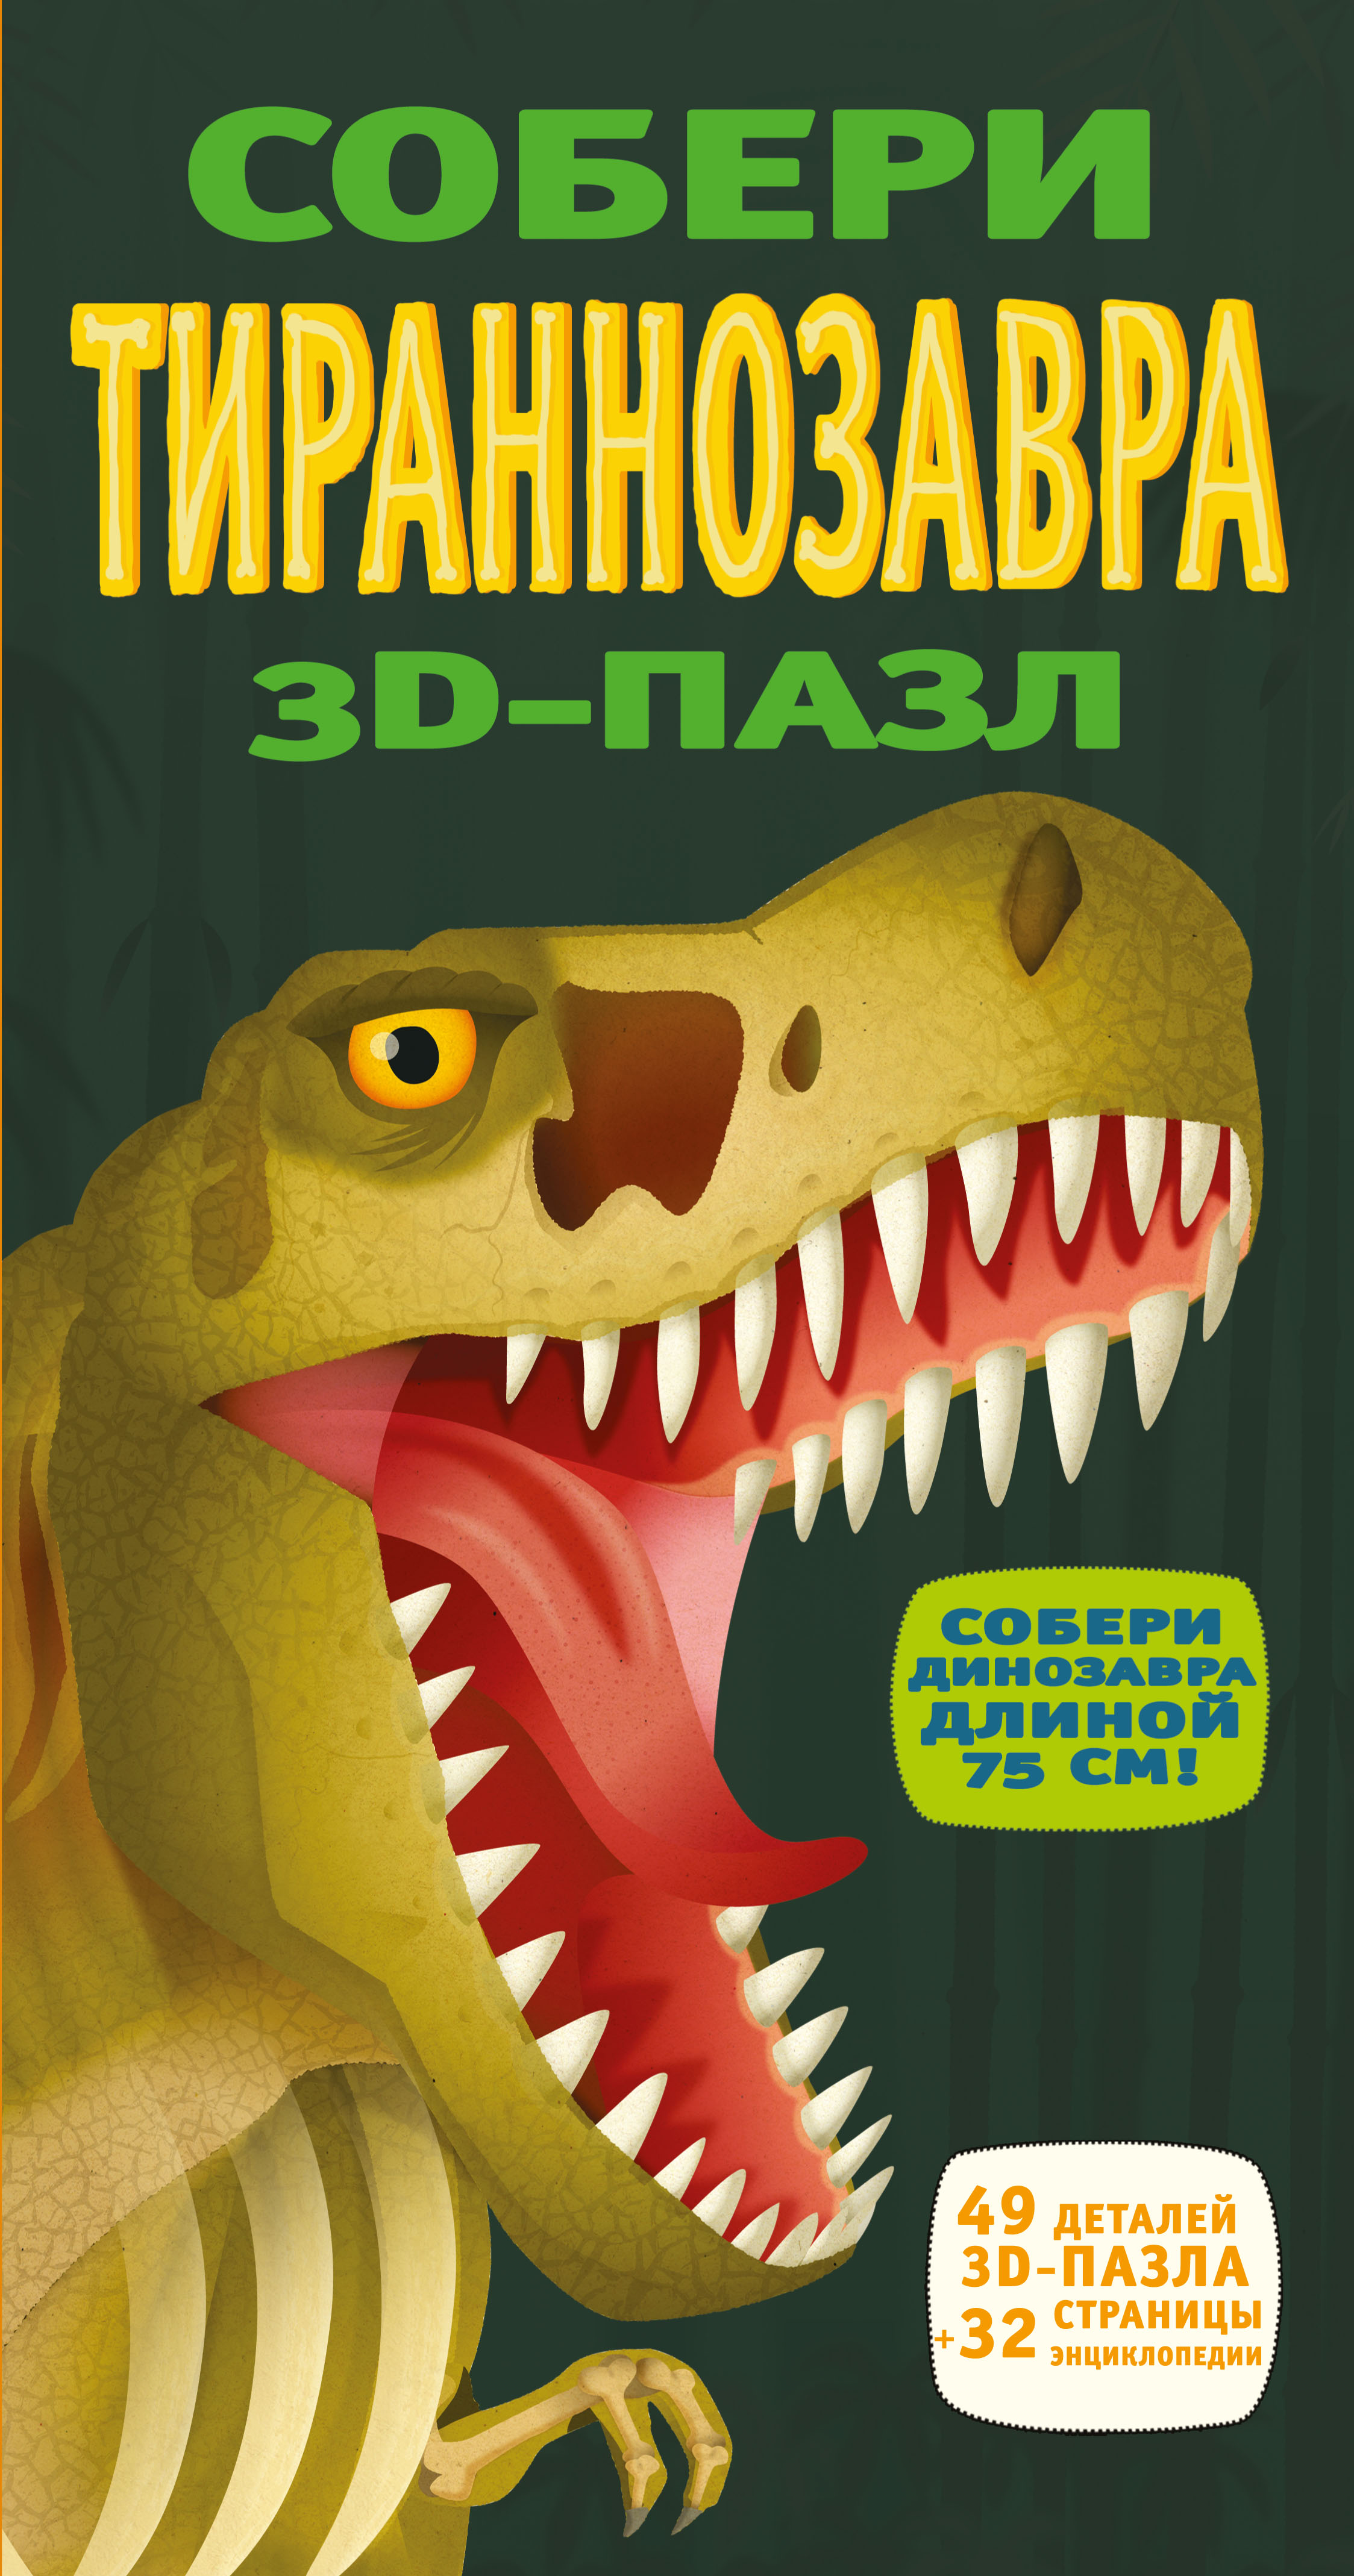 Собери тираннозавра. 3D-пазл случается внимательно рассматривая